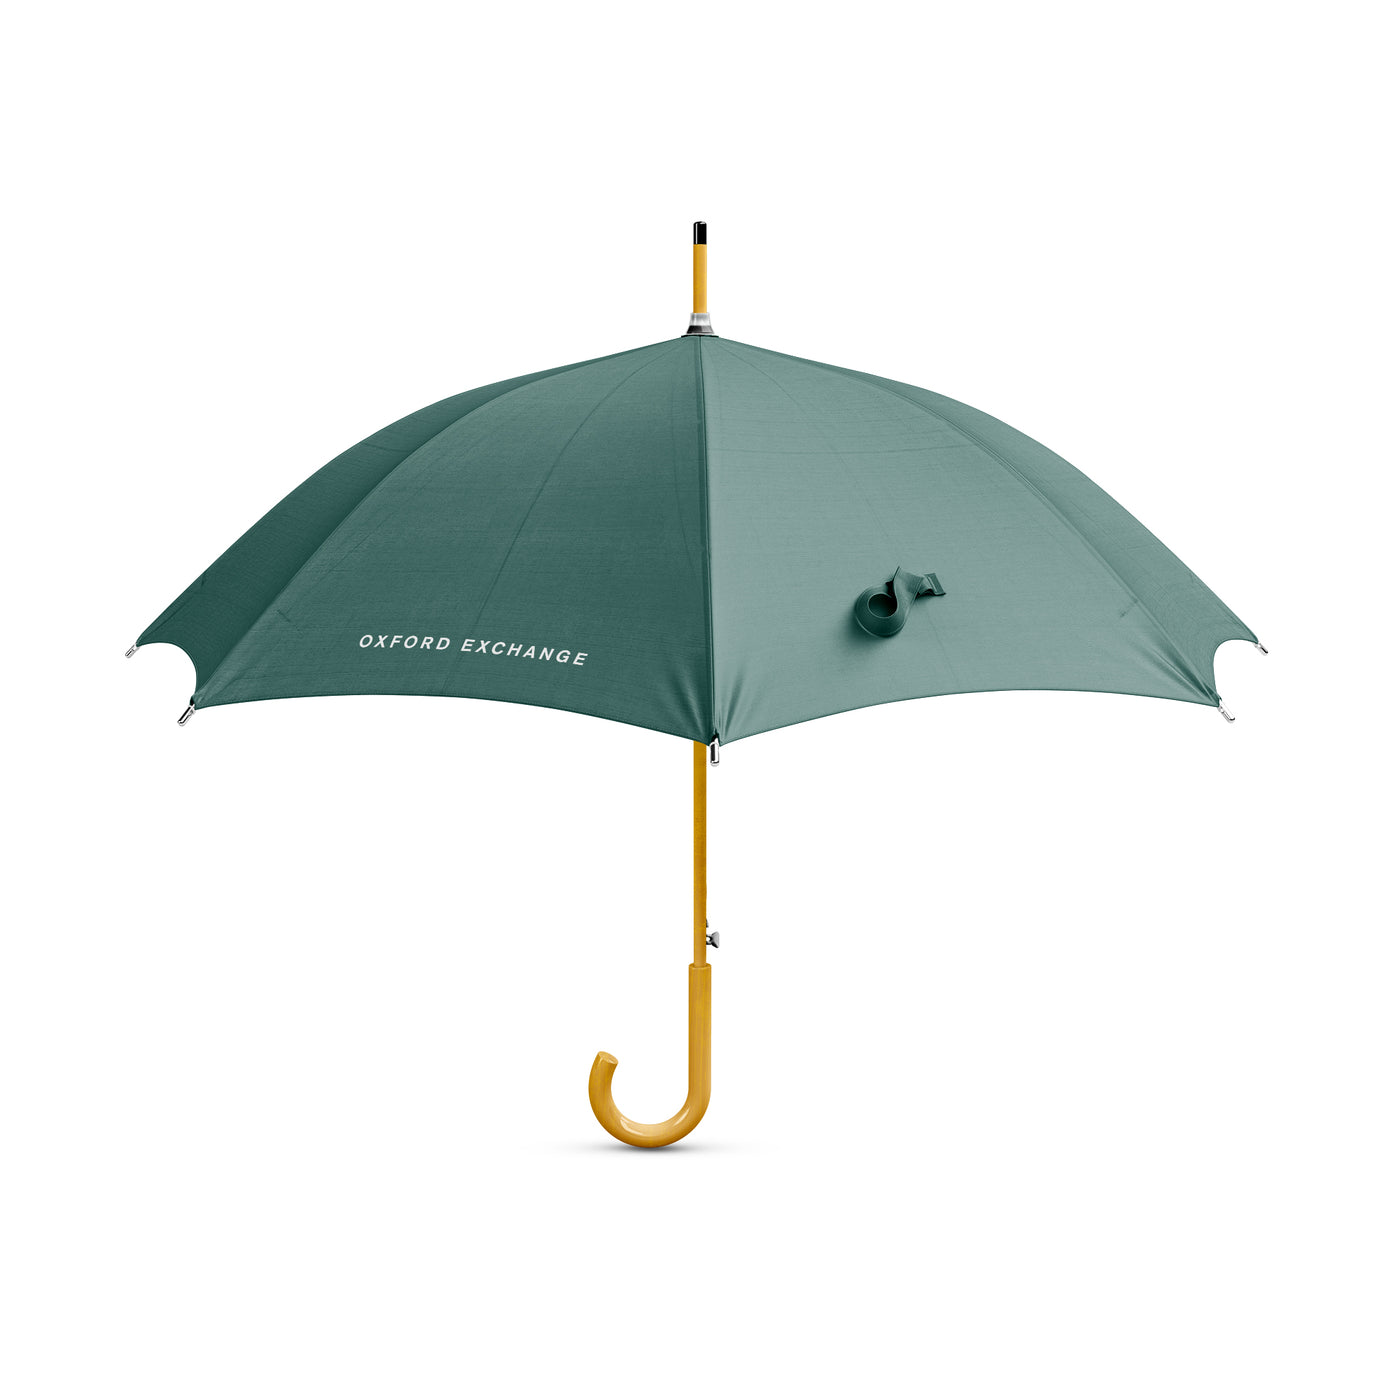 Oxford Exchange Umbrella